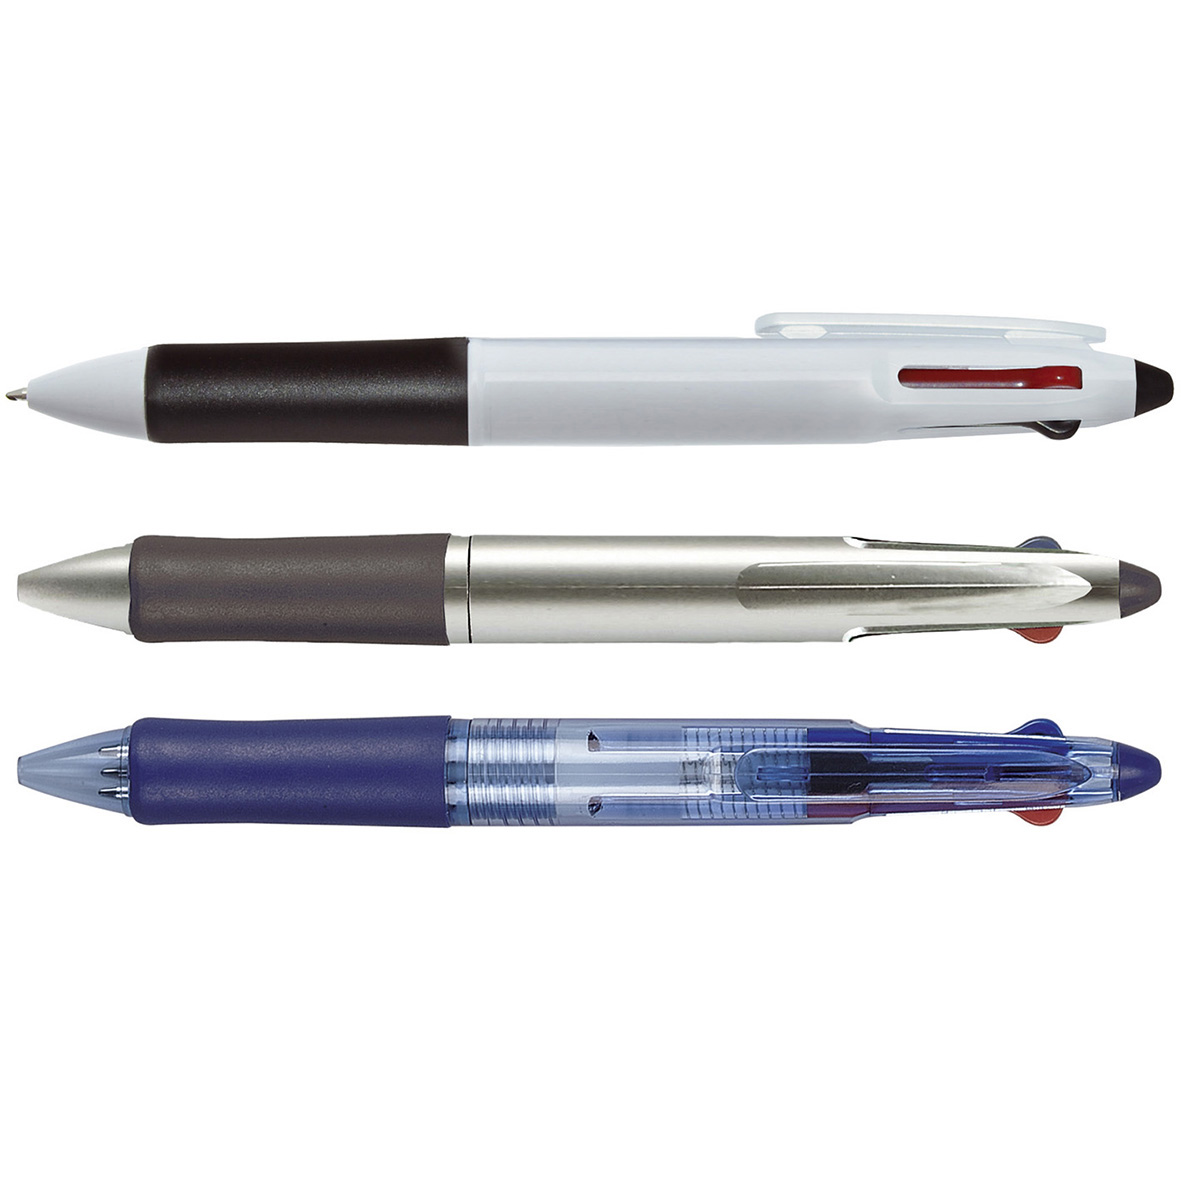 Stylo bille publicitaire trois couleurs cote233 - Multimines - stylo multifonction